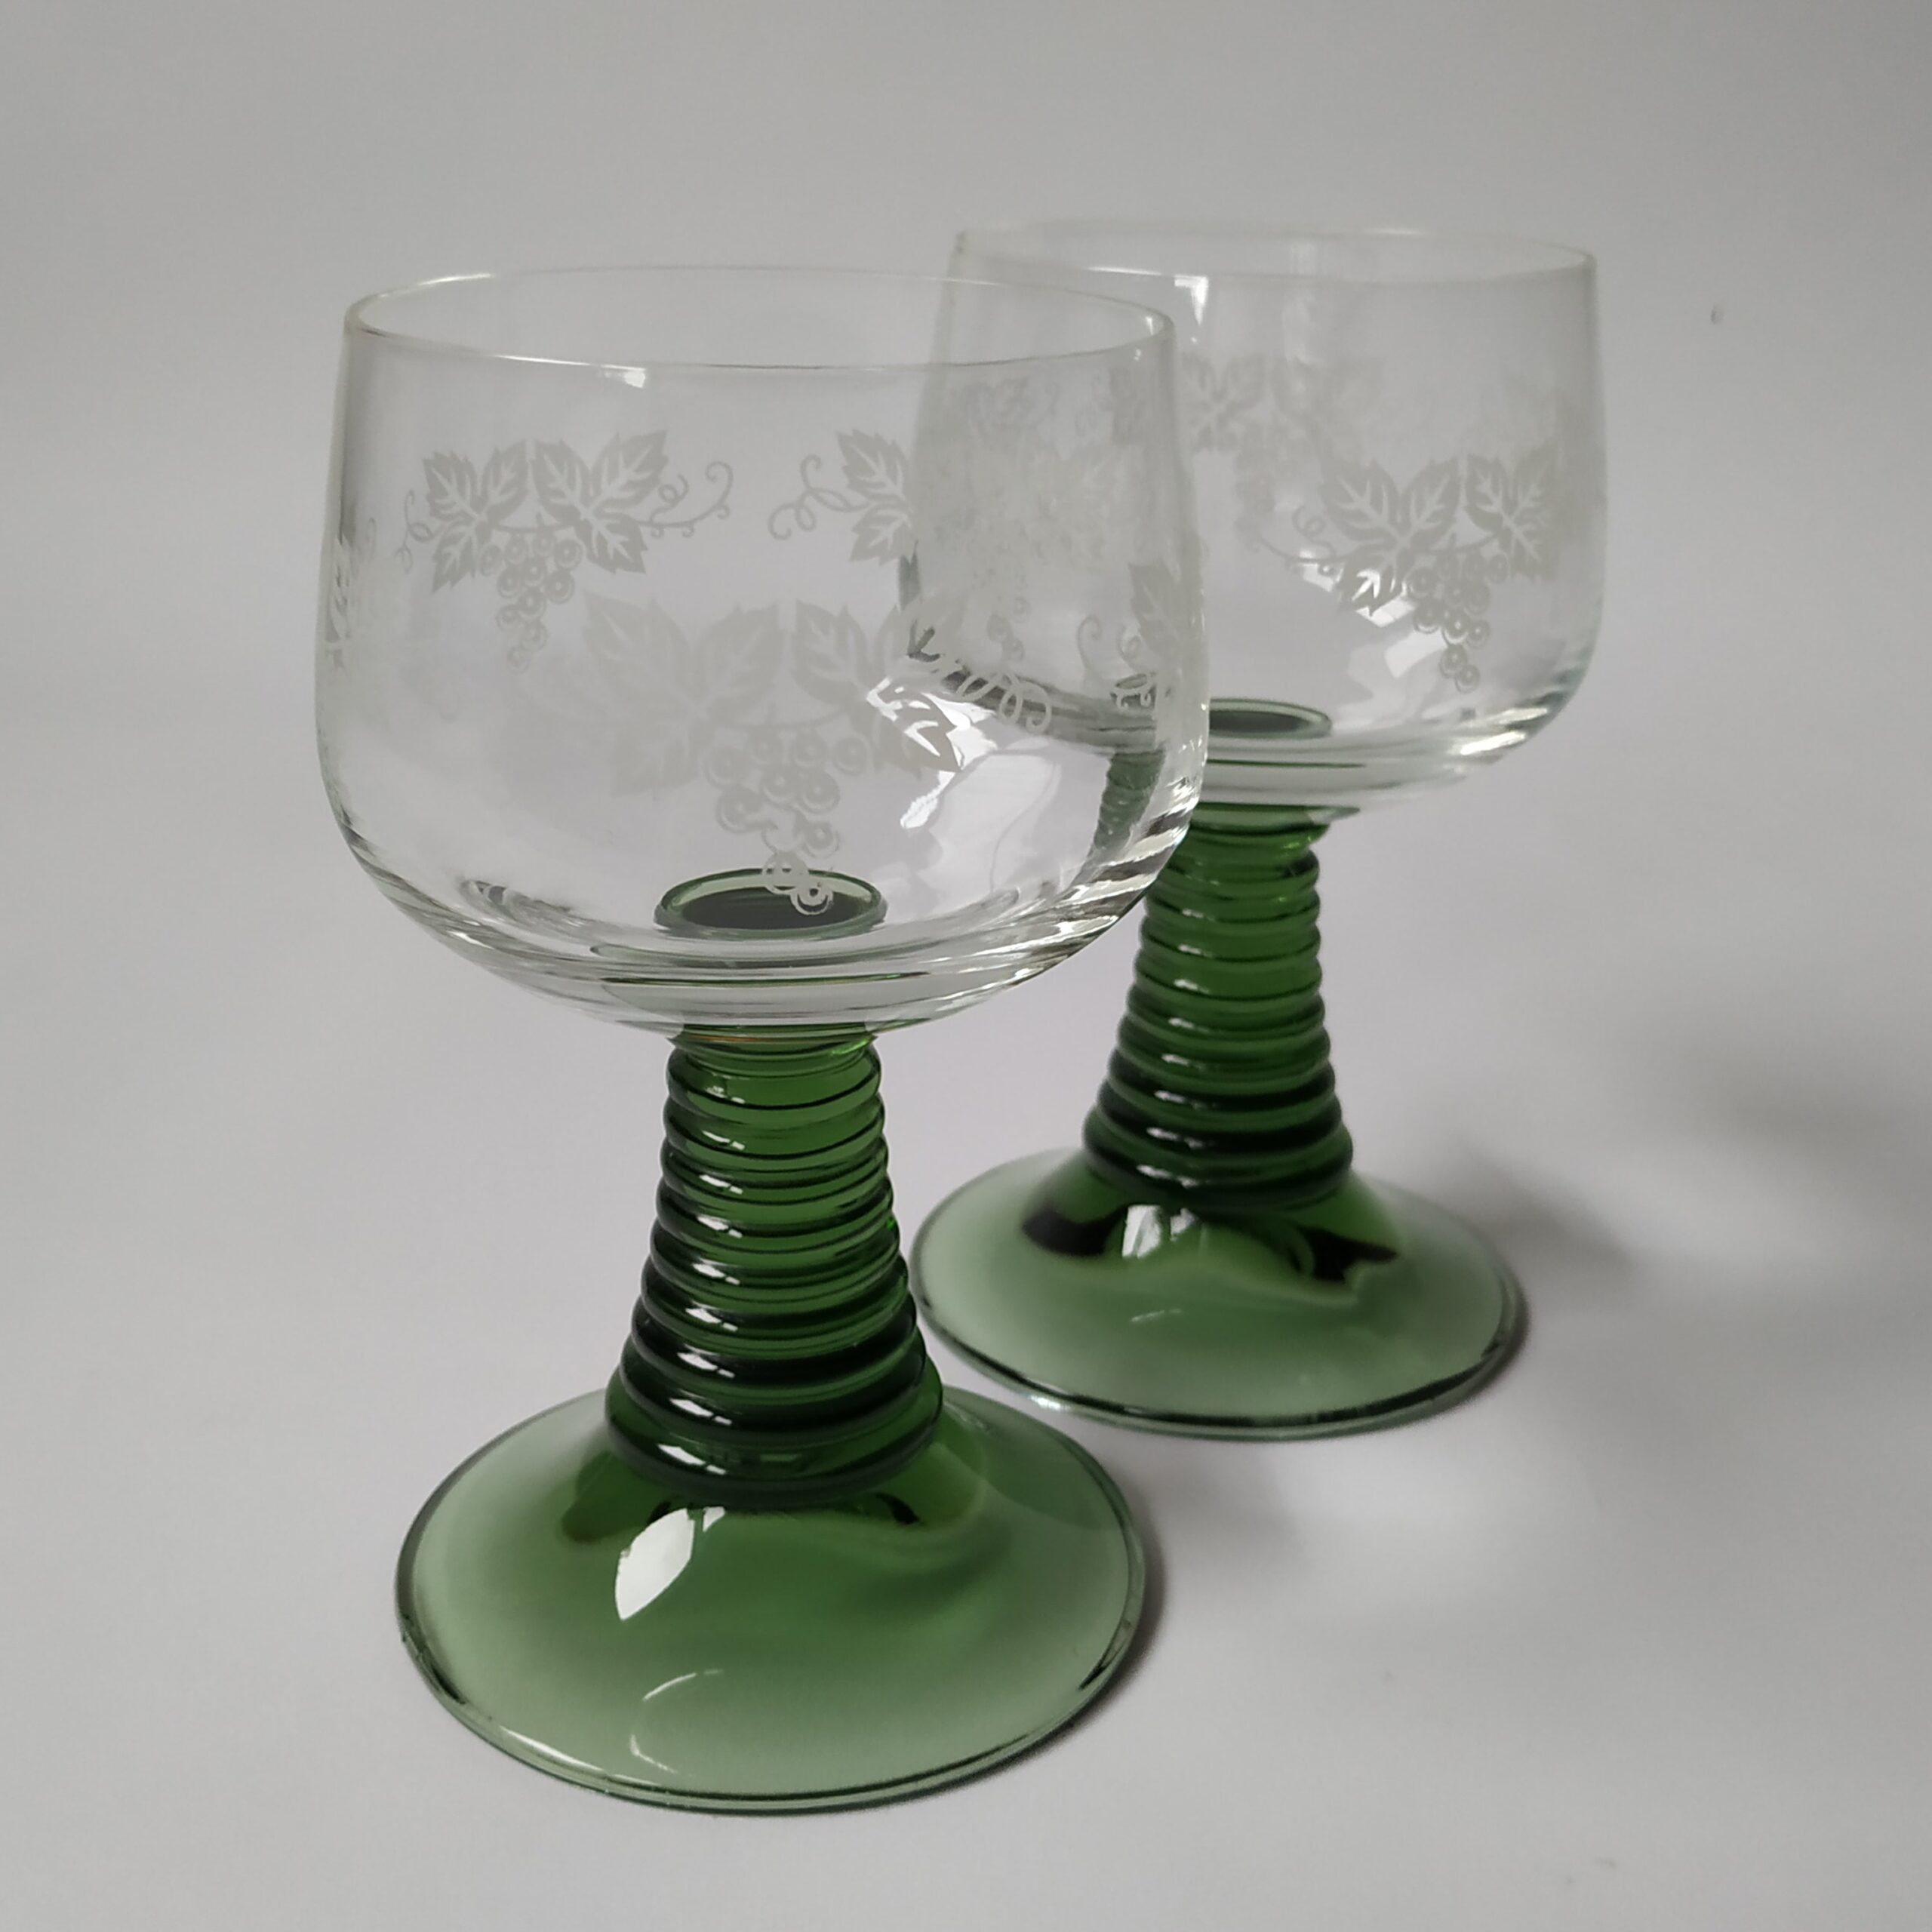 Wijnglazen – moezelglazen met groene voet – afbeelding druiventak – inhoud 200 ml (3)